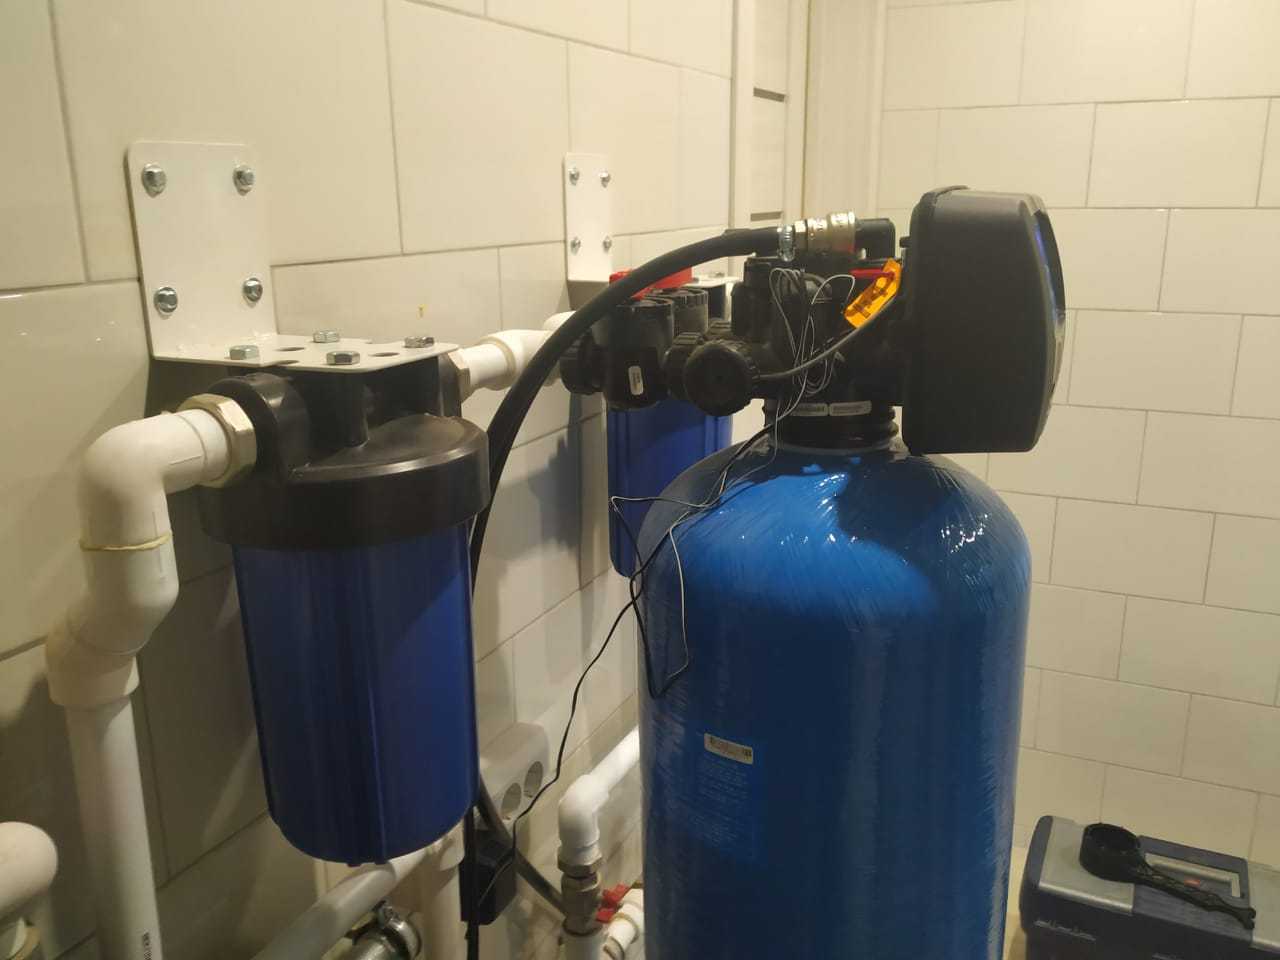 Фильтры для смягчения жесткой воды: для скважин и водопровода